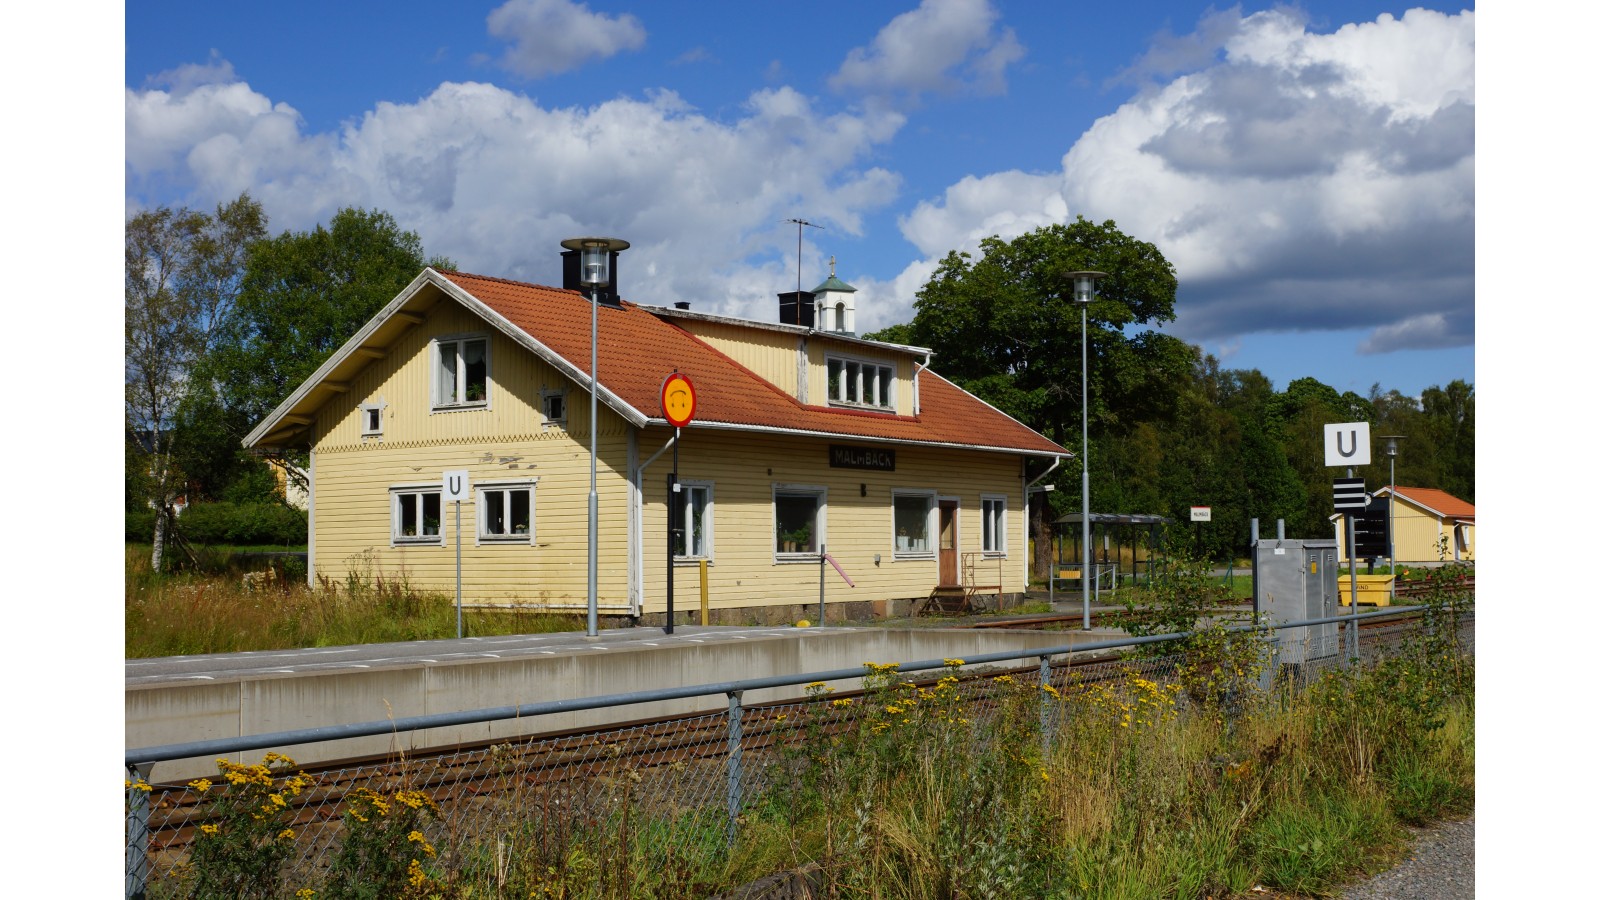 Malmbäck station